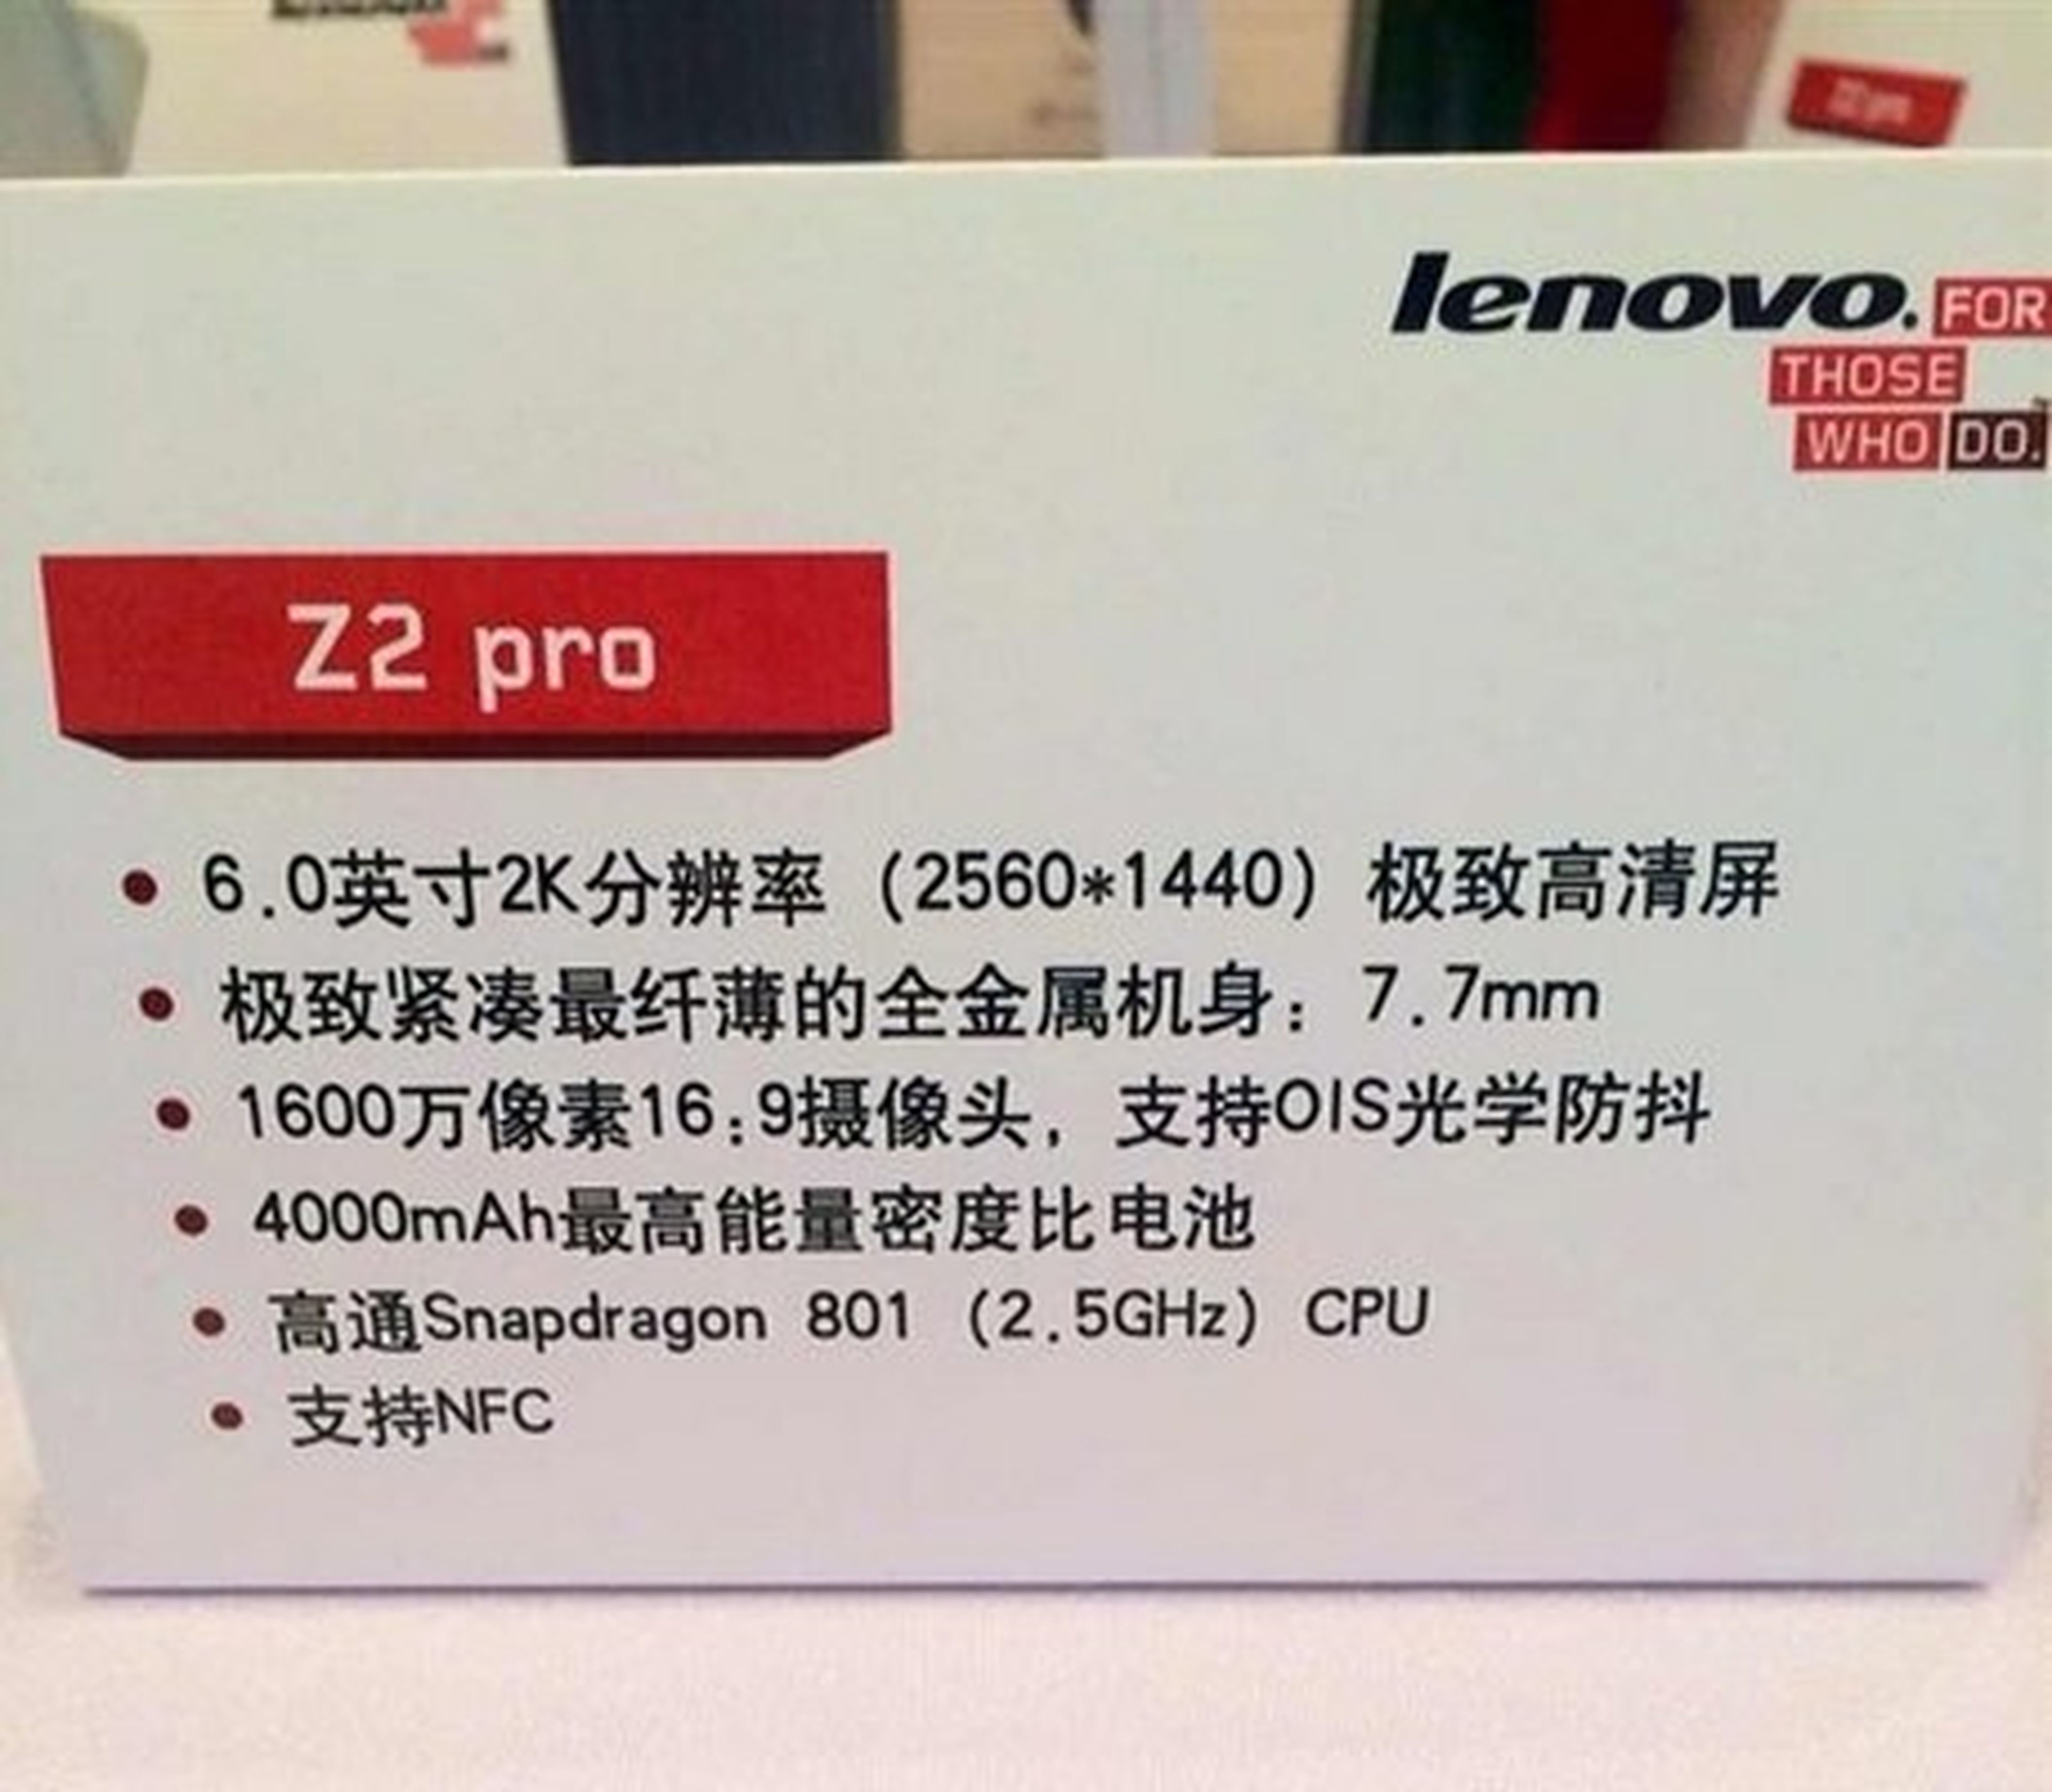 Lenovo Vibe Z2 Pro con pantalla QHD